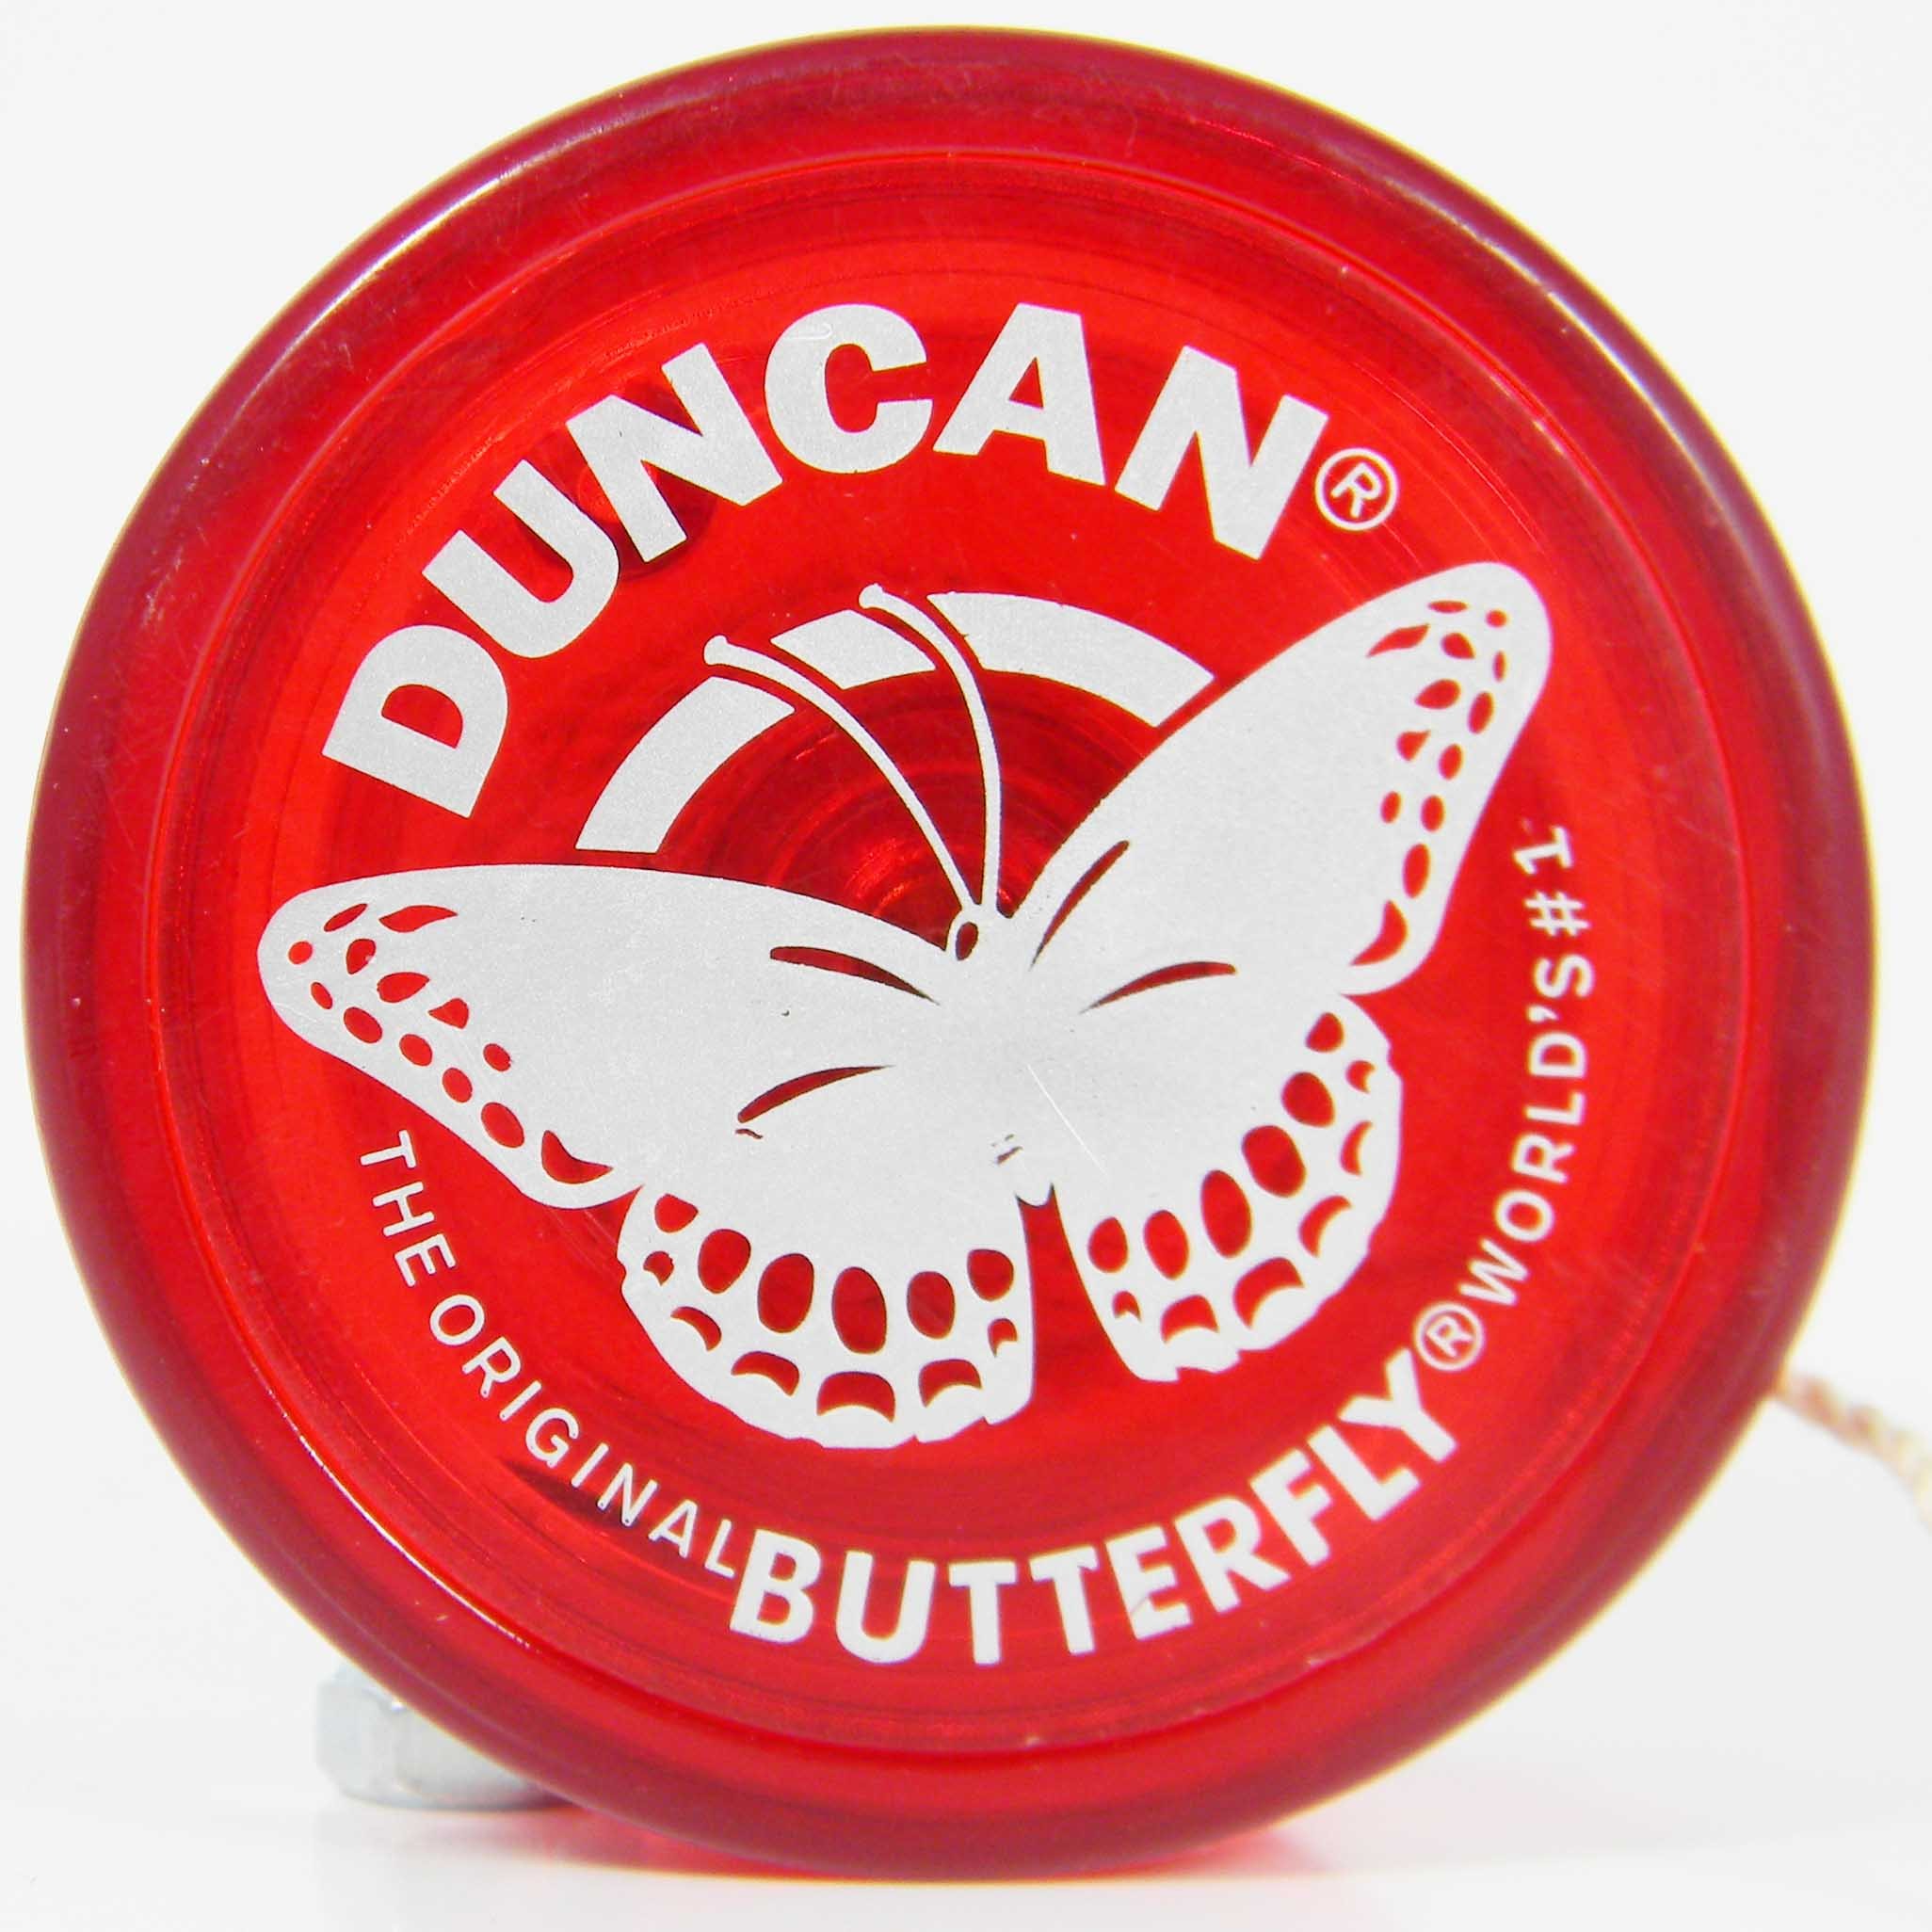 Duncan Butterfly Yo-Yo